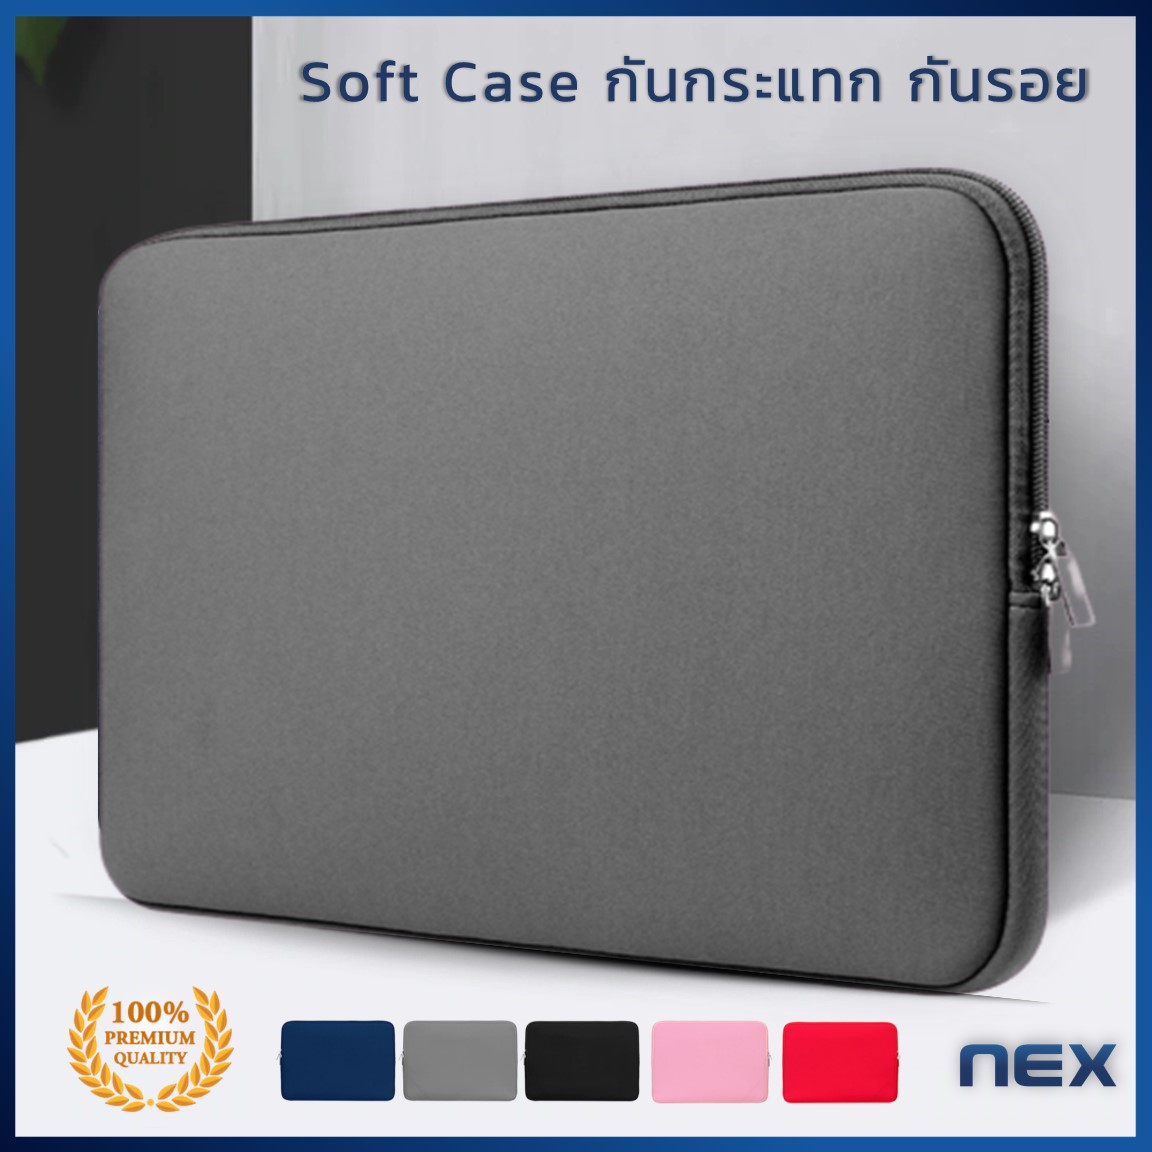 NEX เคสแล็ปท็อป เคสMacbook กระเป๋าโน๊ตบุ๊ค กันฝุ่นกันกระแทก 13.3, 14-15, 15.6นิ้ว เคสMacbook Air Pro ซองใส่โน๊ตบุ๊ค ซองแล็ปท็อป Laptop Bag Macbook Sleeve Case 13.3-15.6 inch